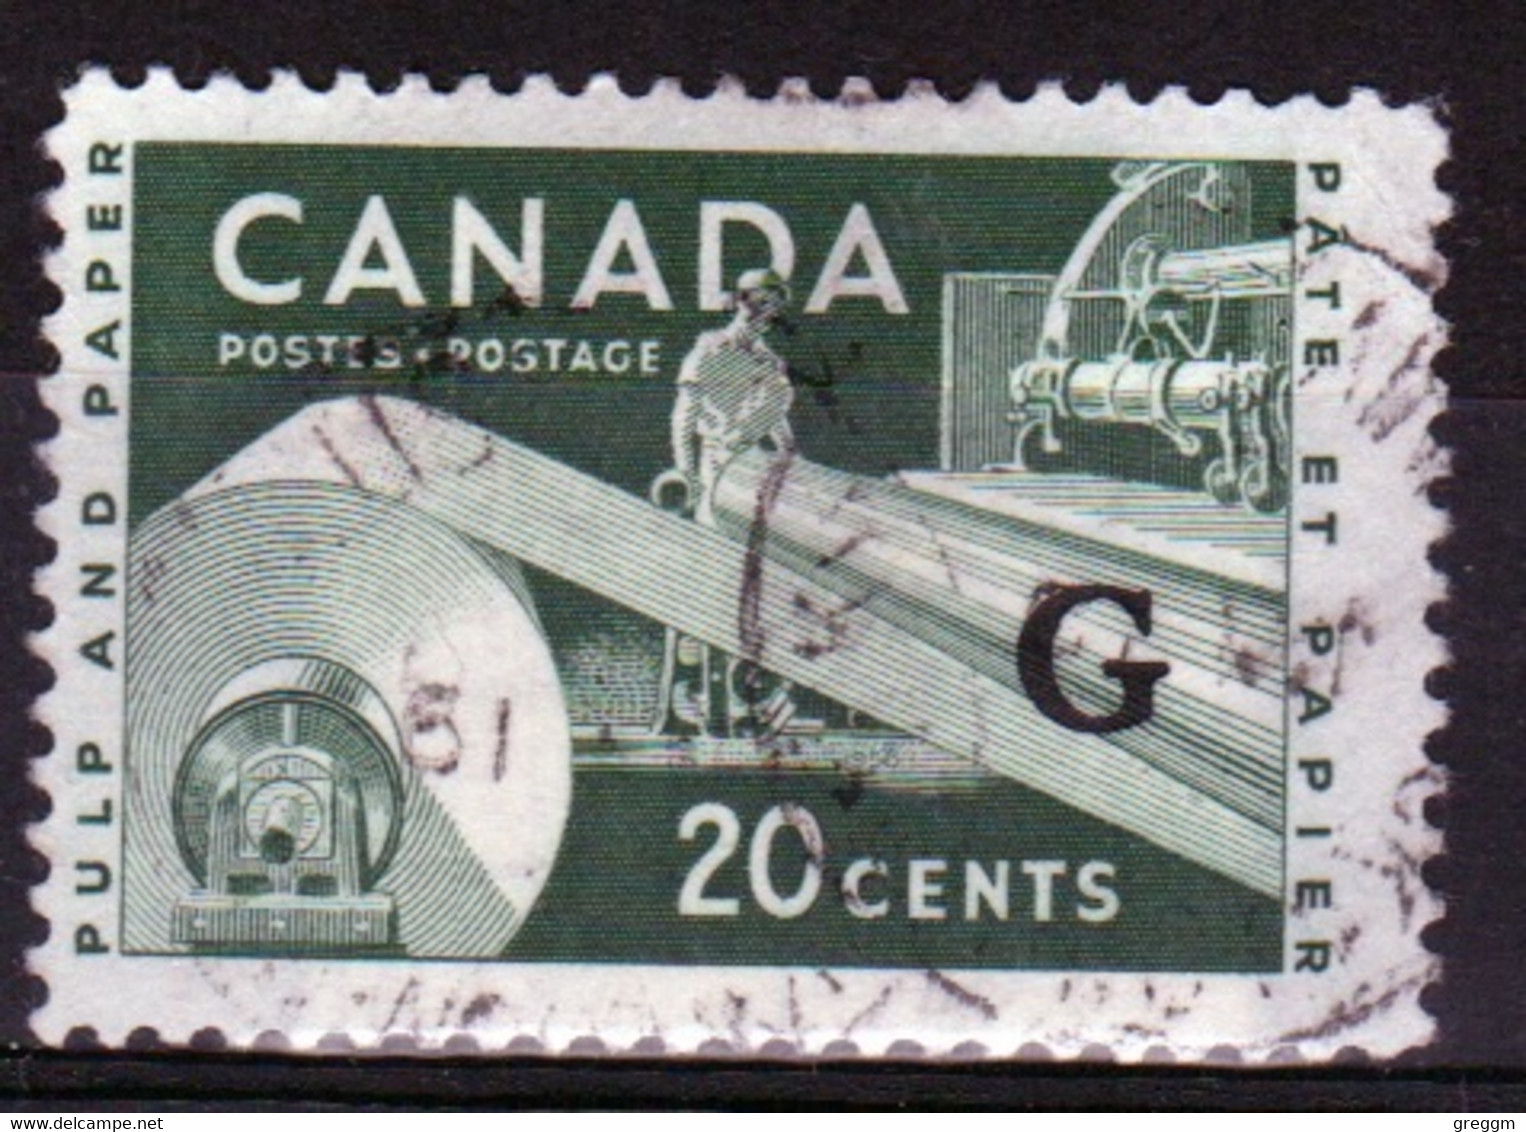 Canada 1955 Single 20c Stamps Overprinted 'G'. In Fine Used - Aufdrucksausgaben